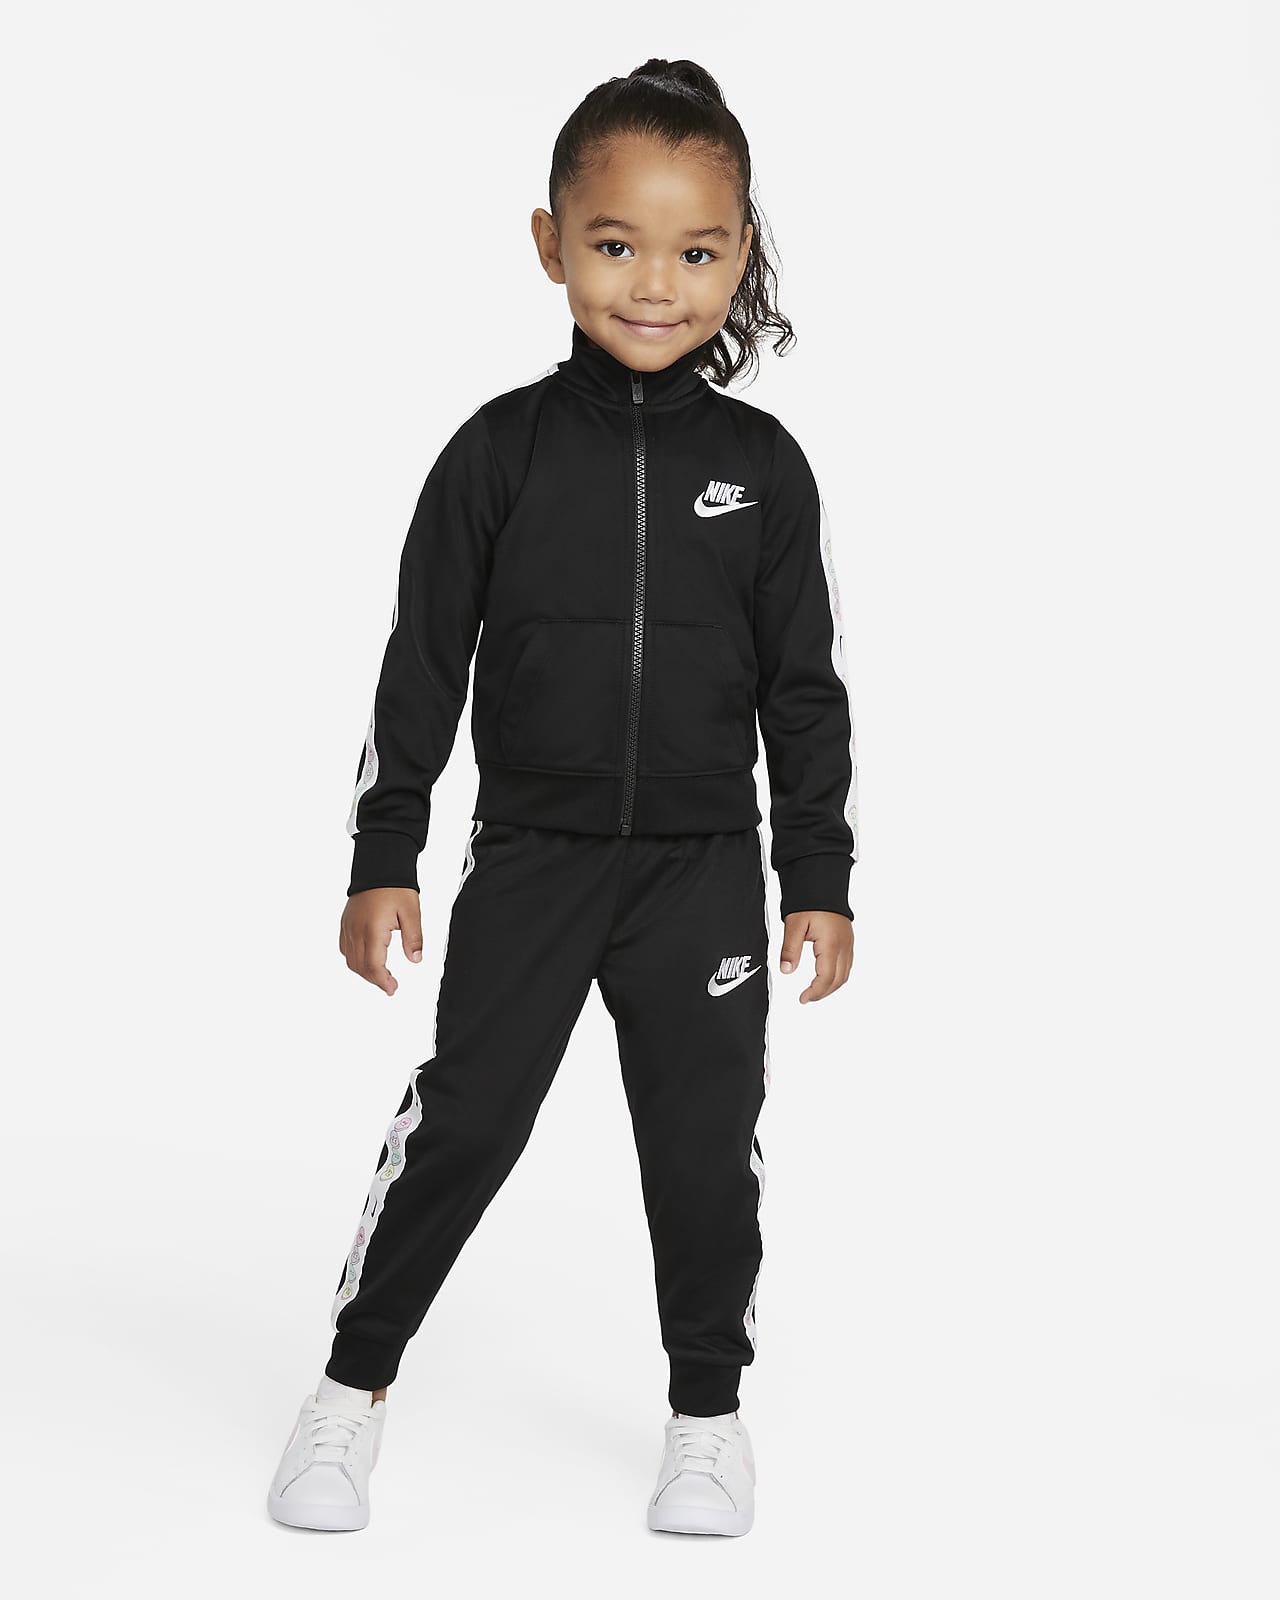 Nike Conjunt de xandall - Infant